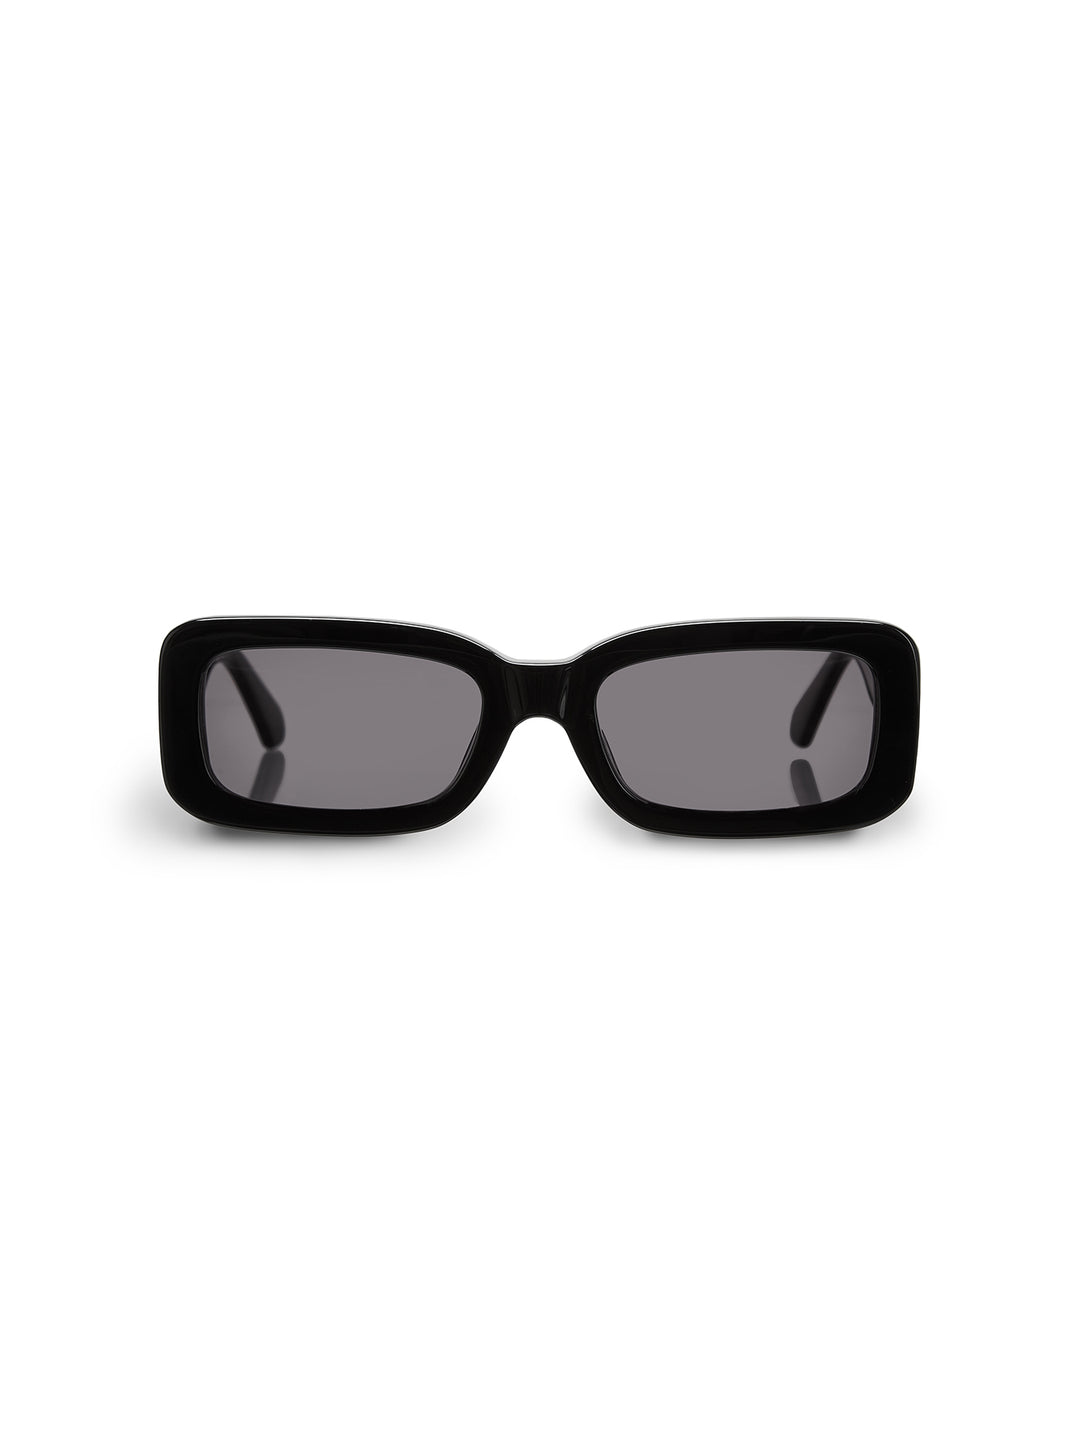 RETRO - Sunglasses • Black